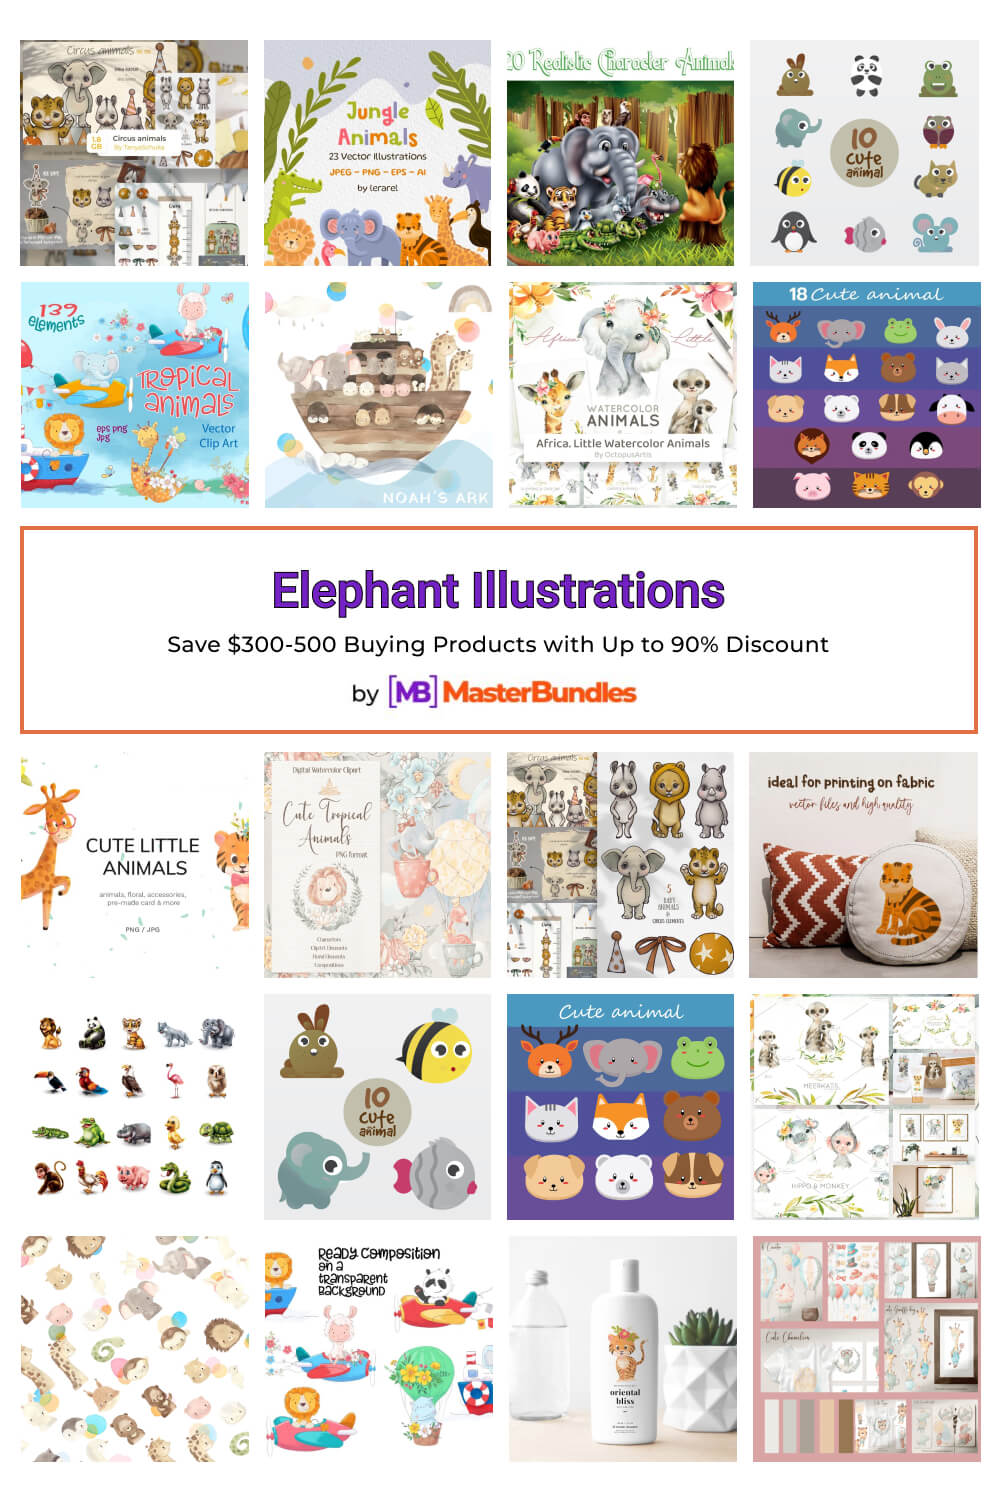 elephant illustrations pinterest image.